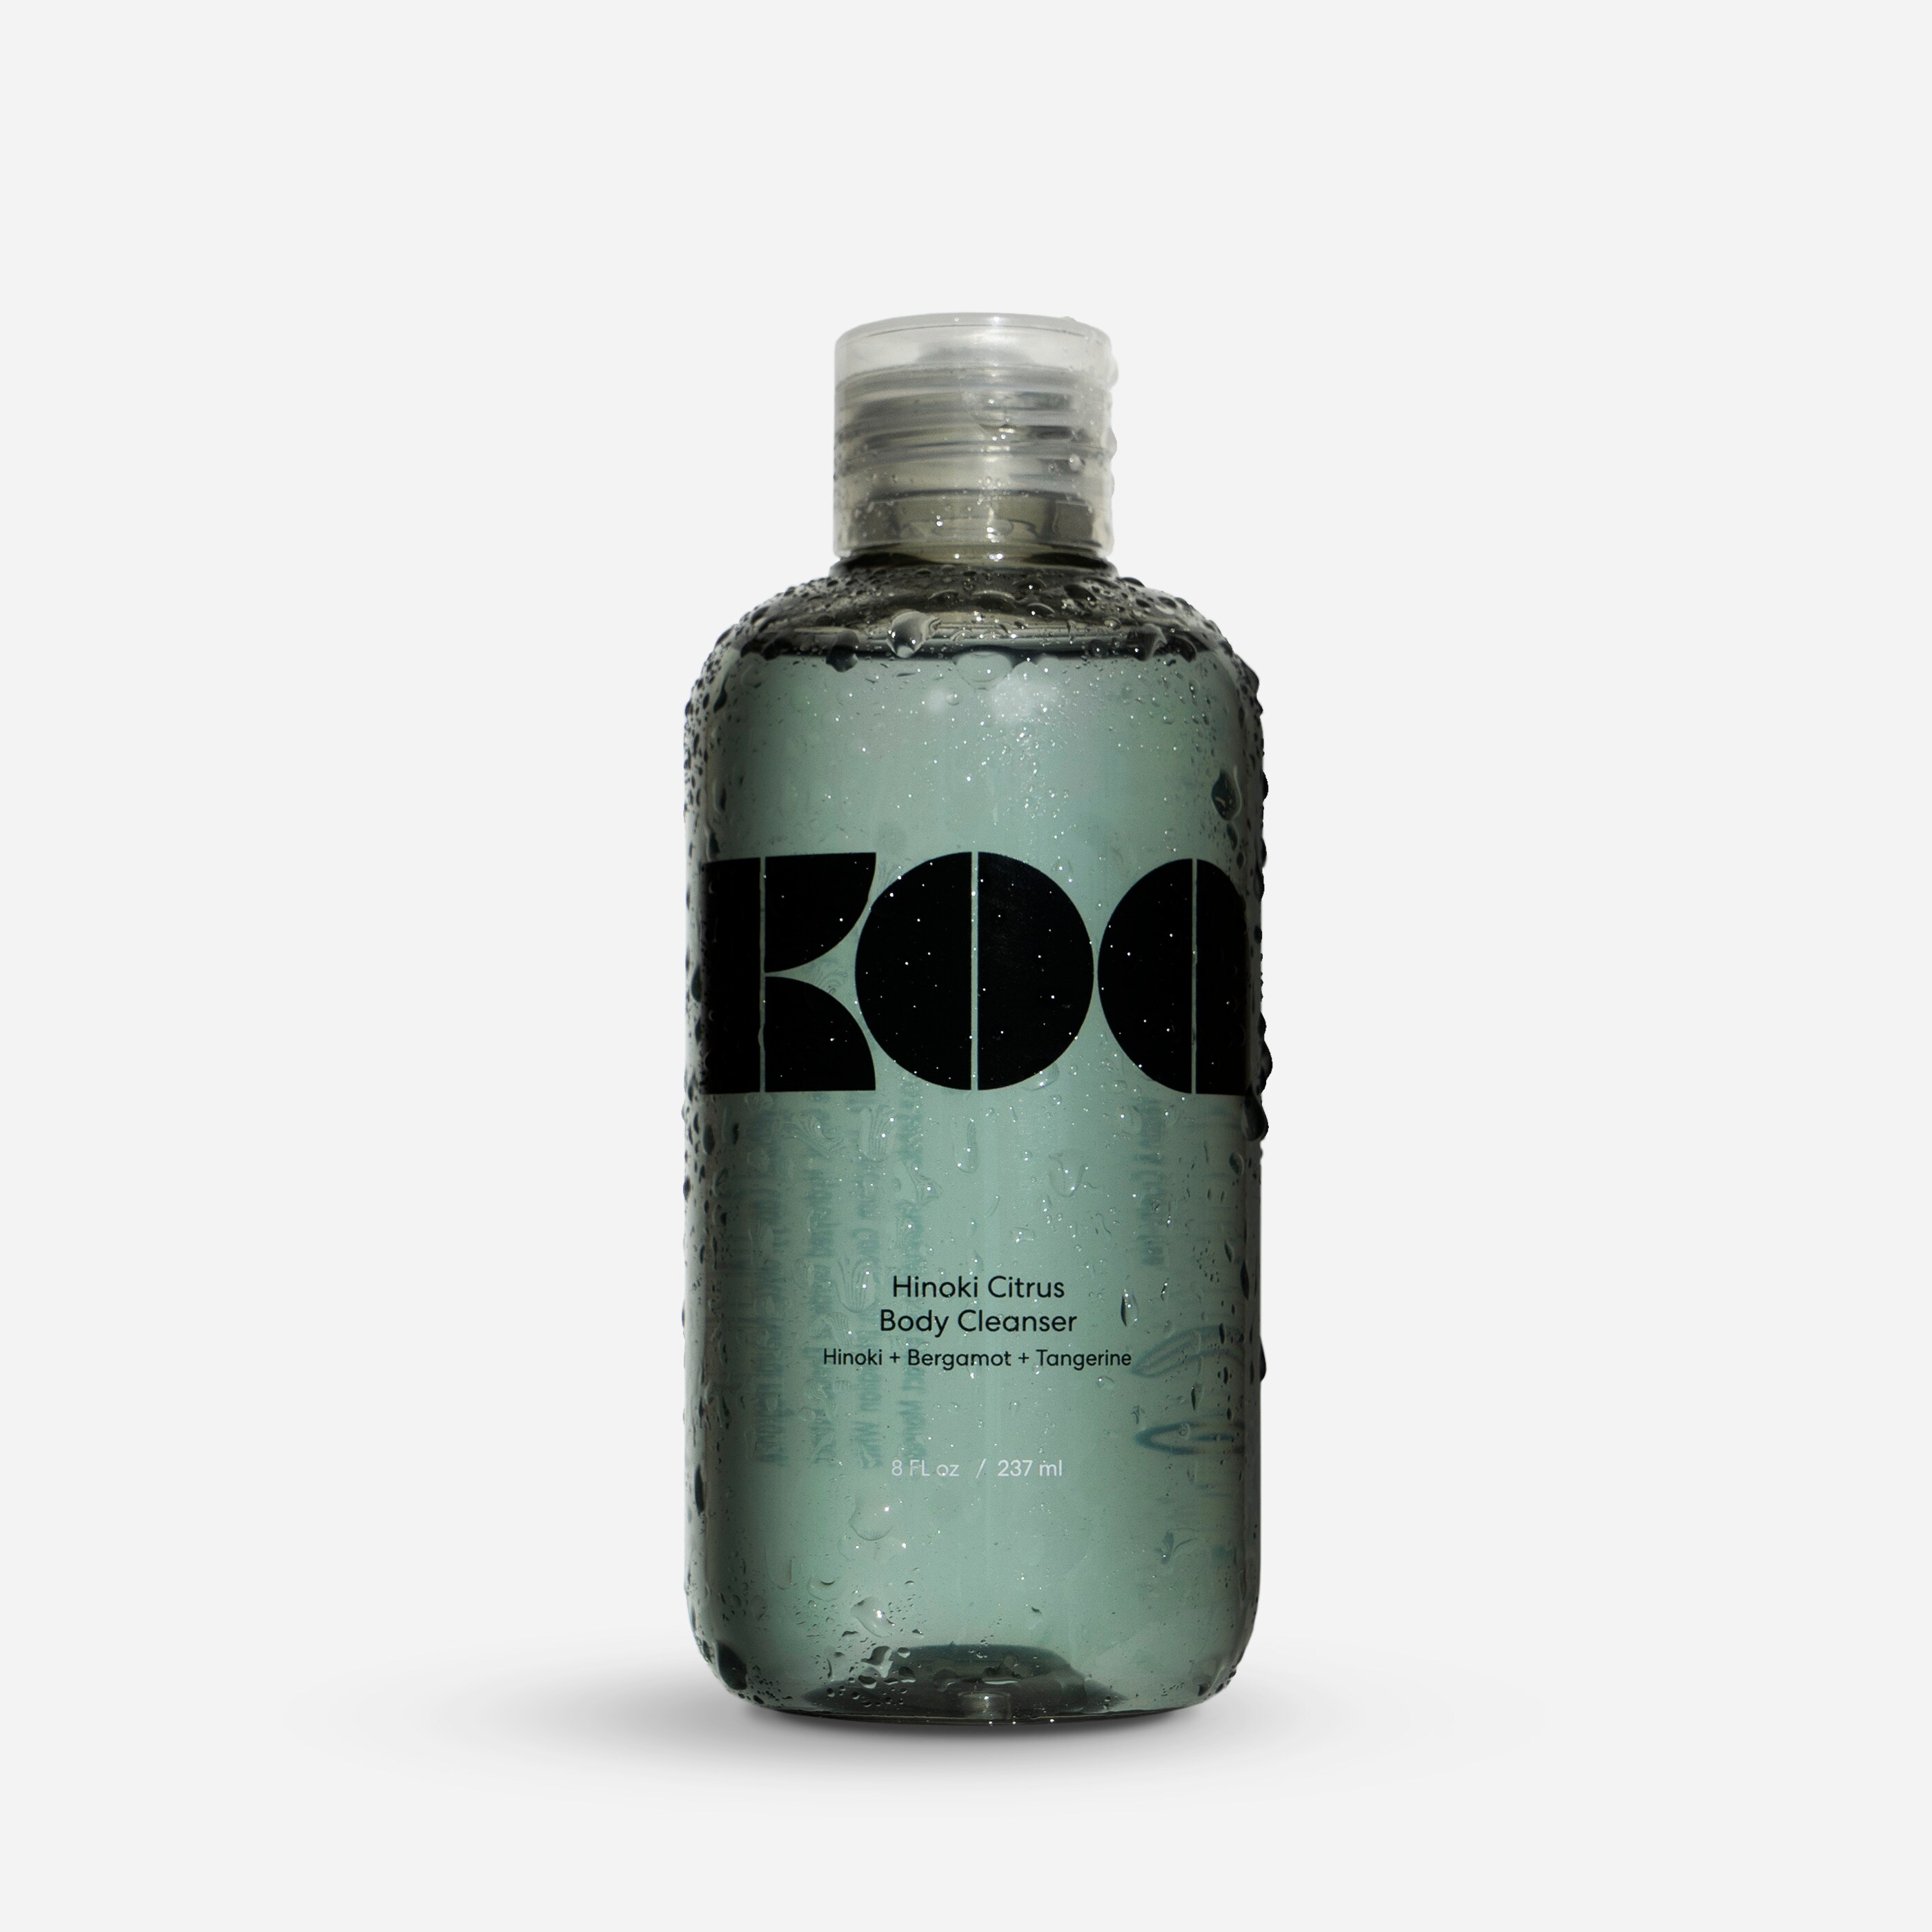  Koa™ body cleanser